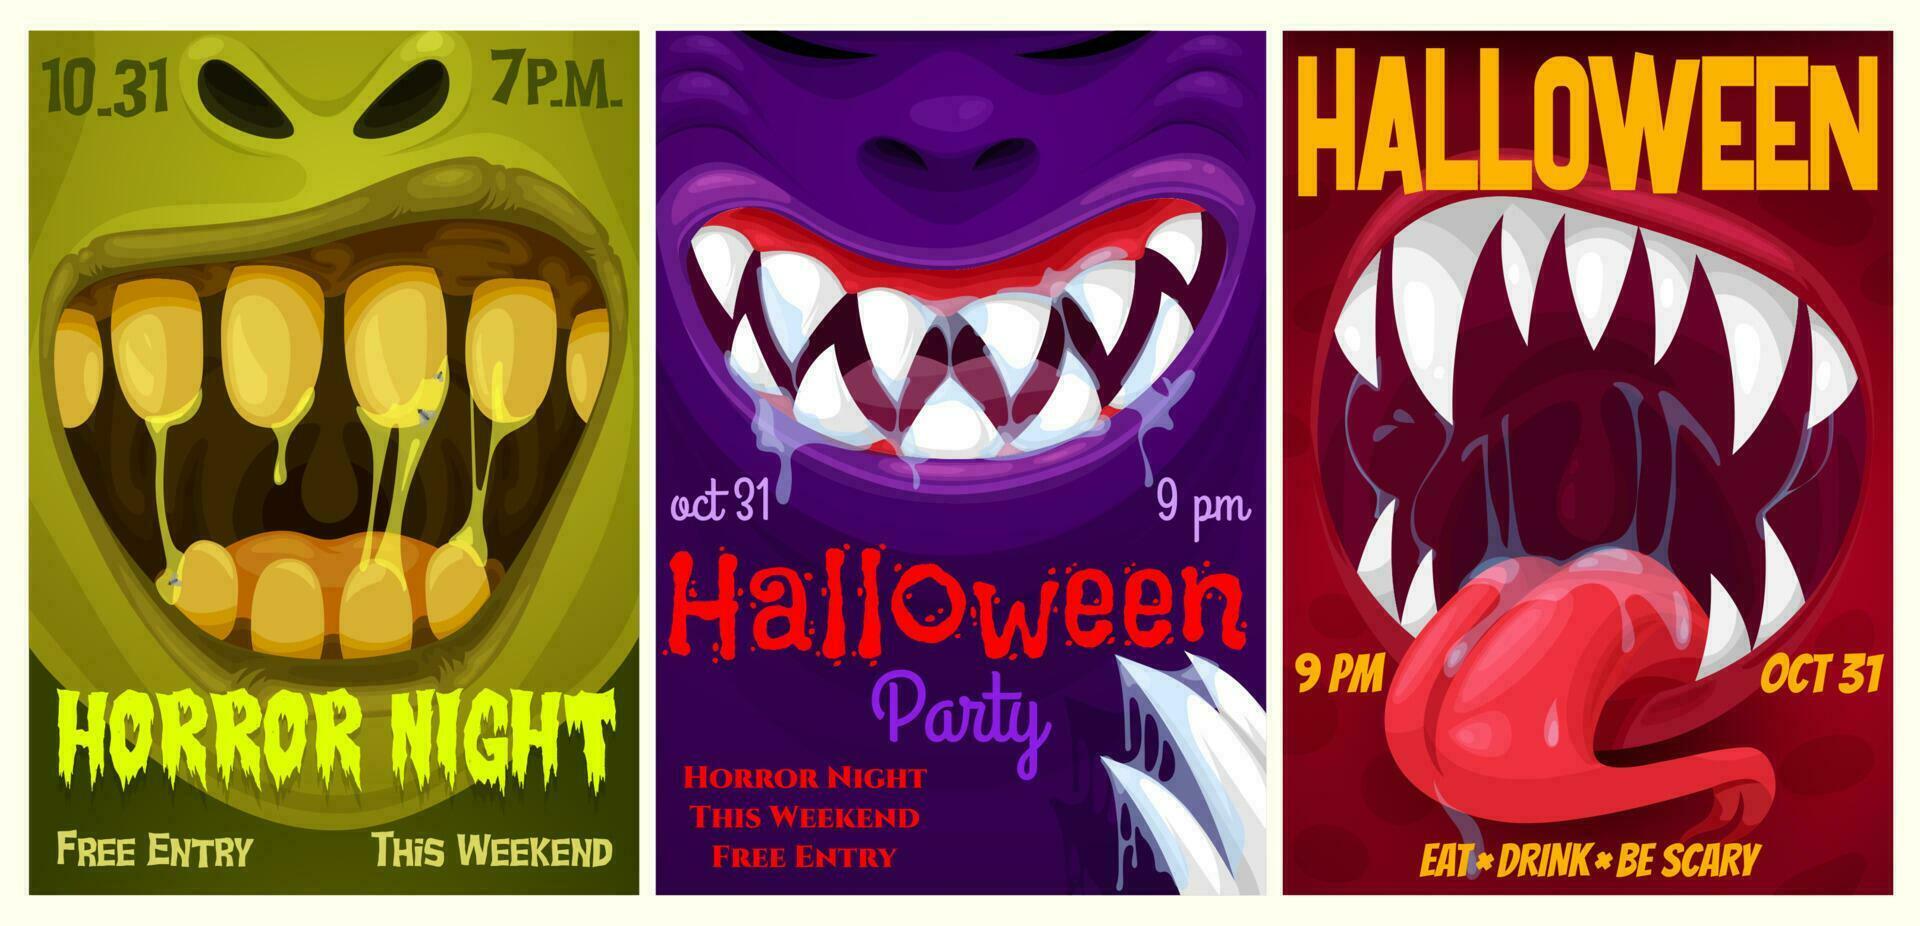 Halloween Party Vektor Flyer mit Monster- Mund